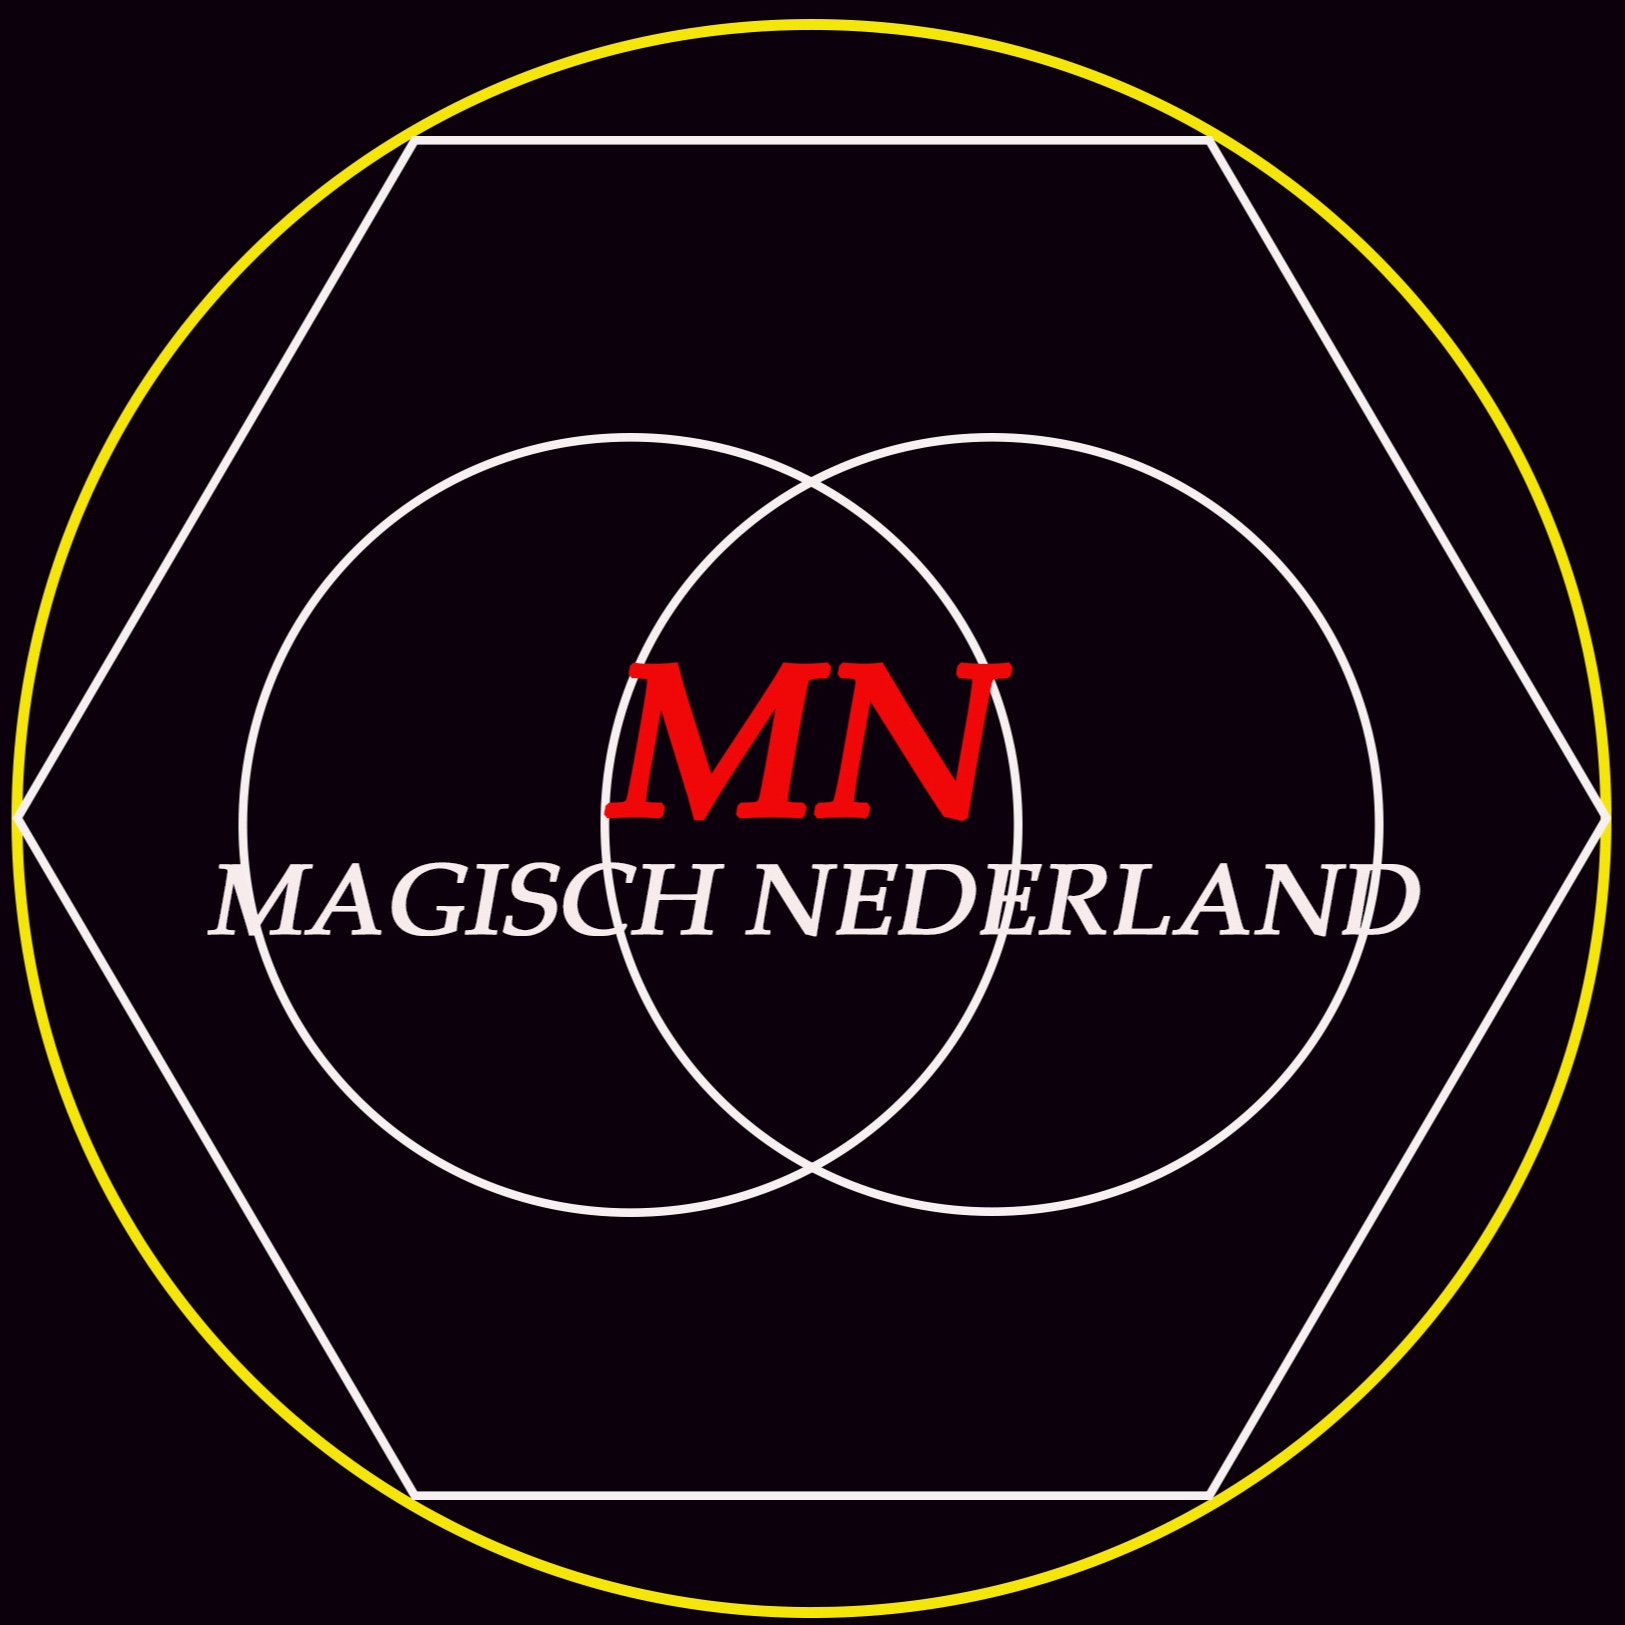 Magisch Nederland